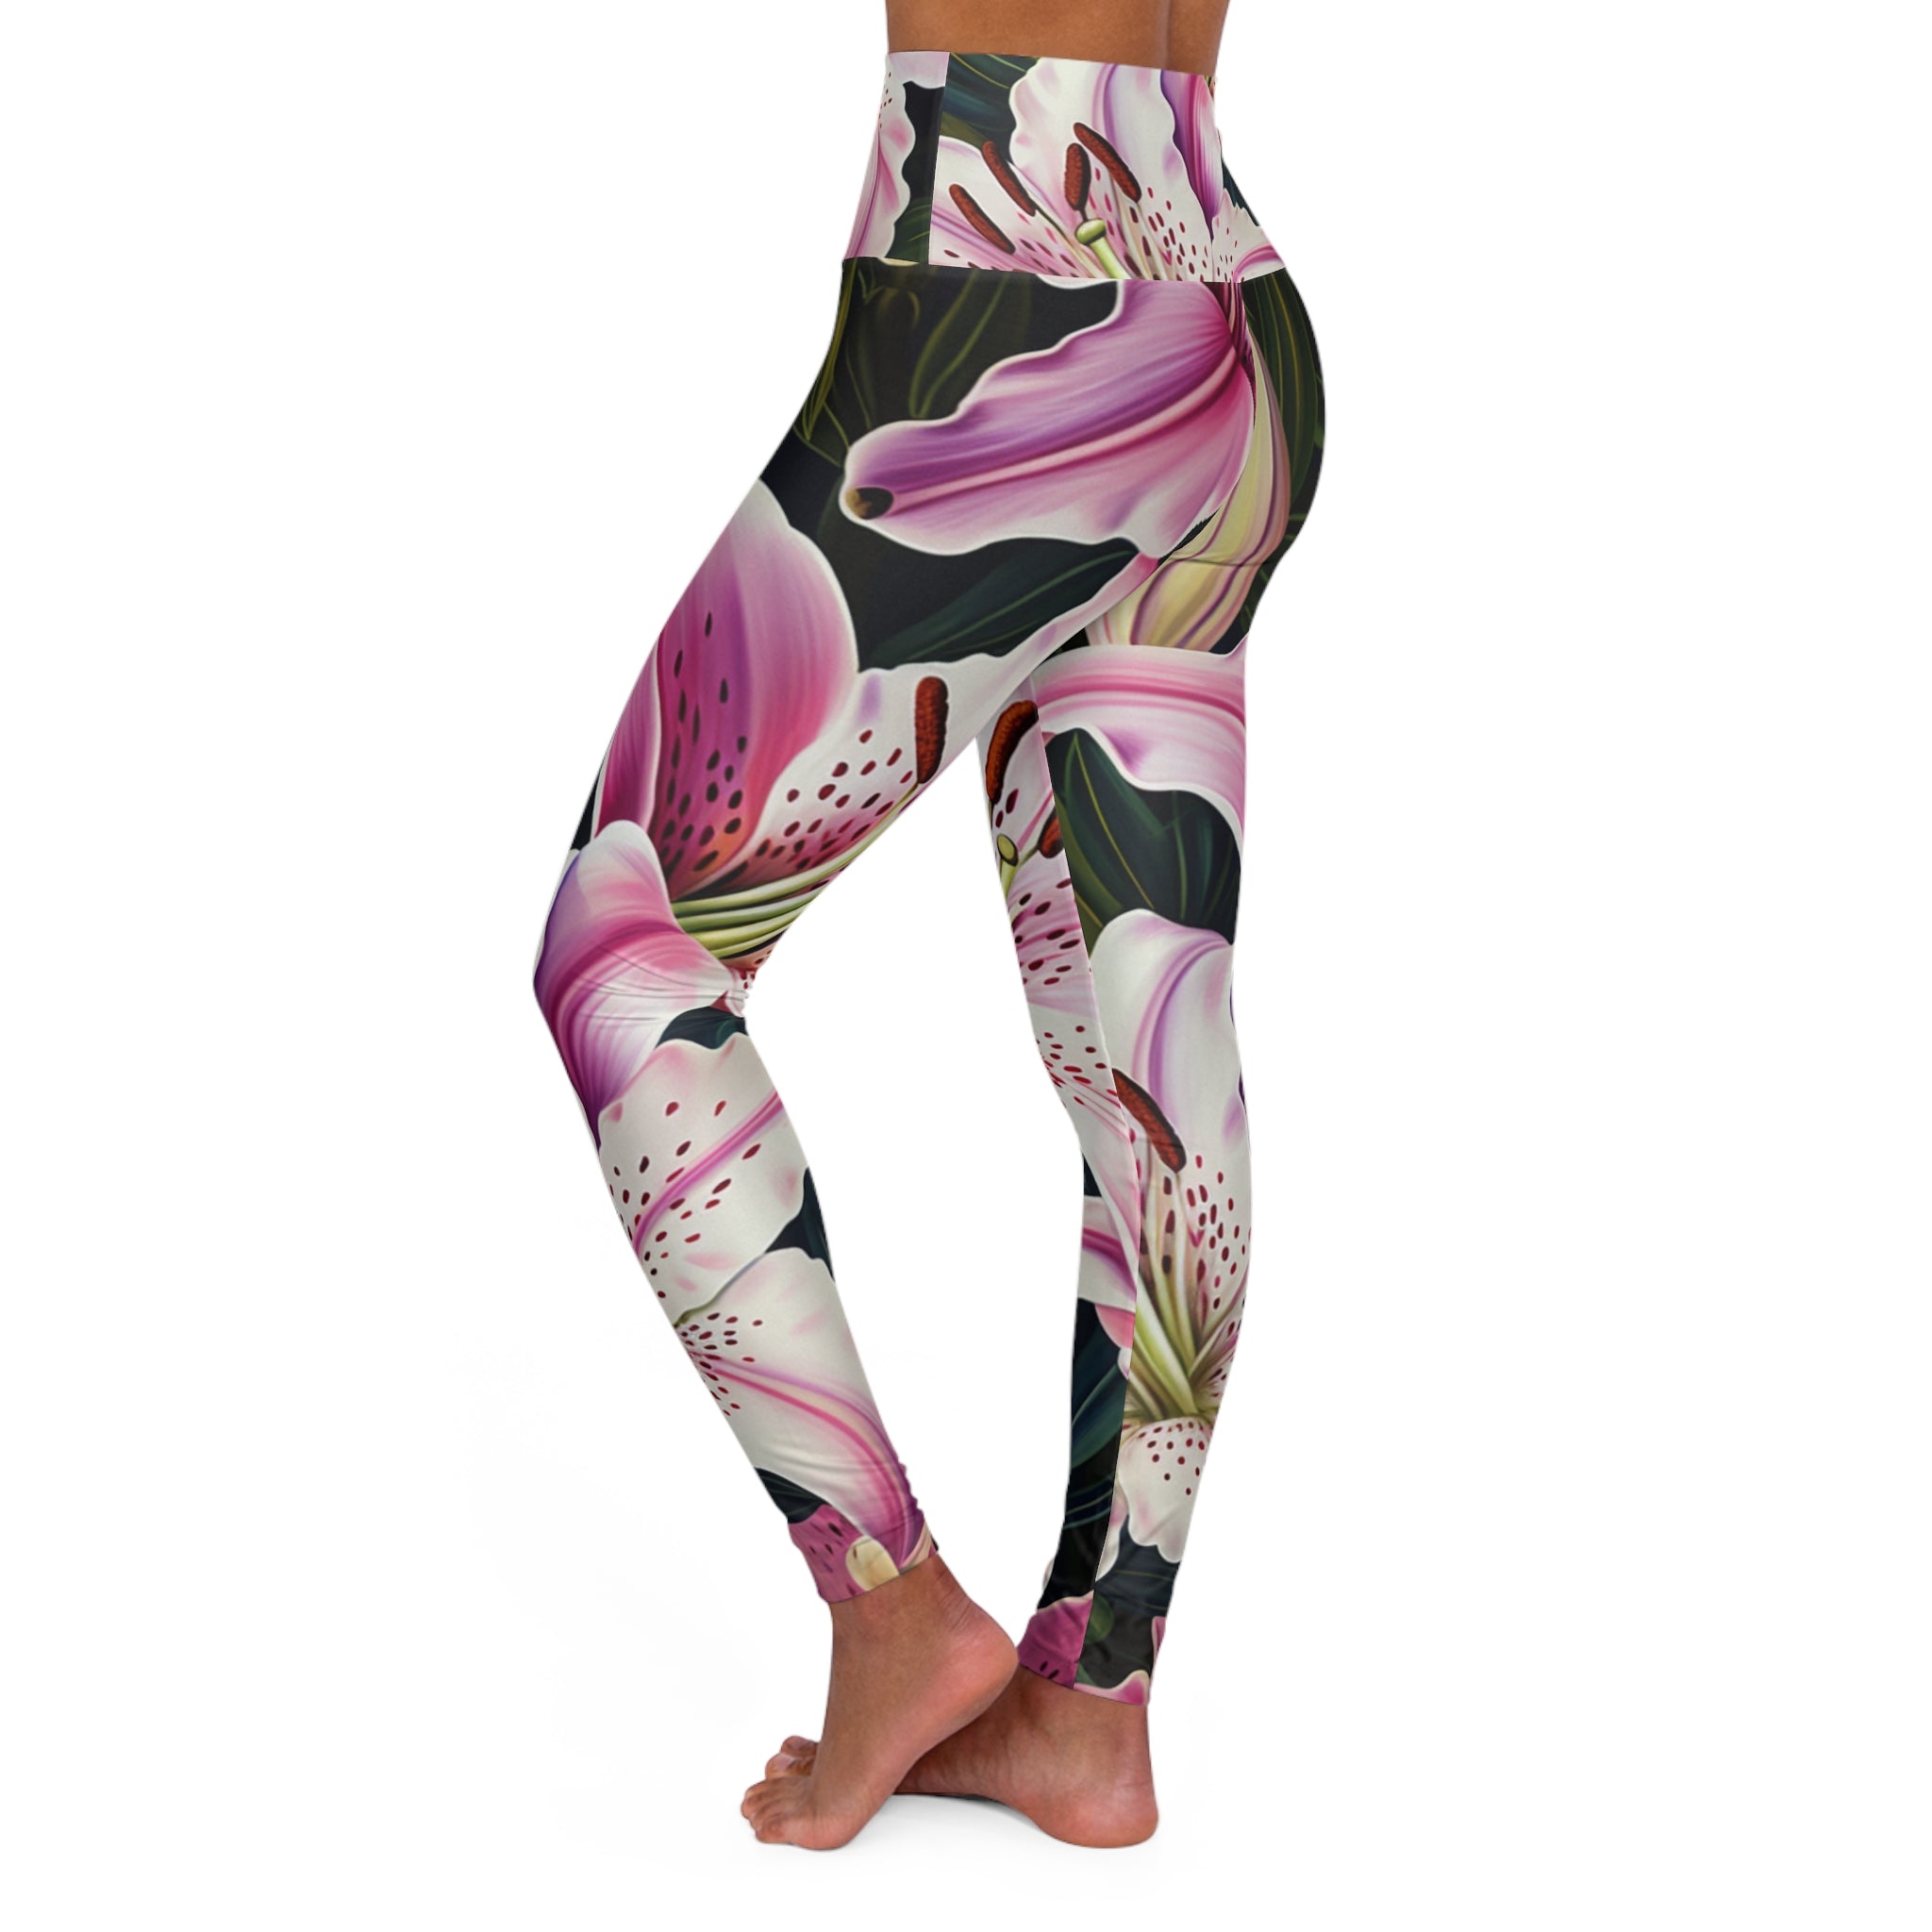 Star Lilly Flower Gym Leggings for Women S-2XL - Elegant & Supportive